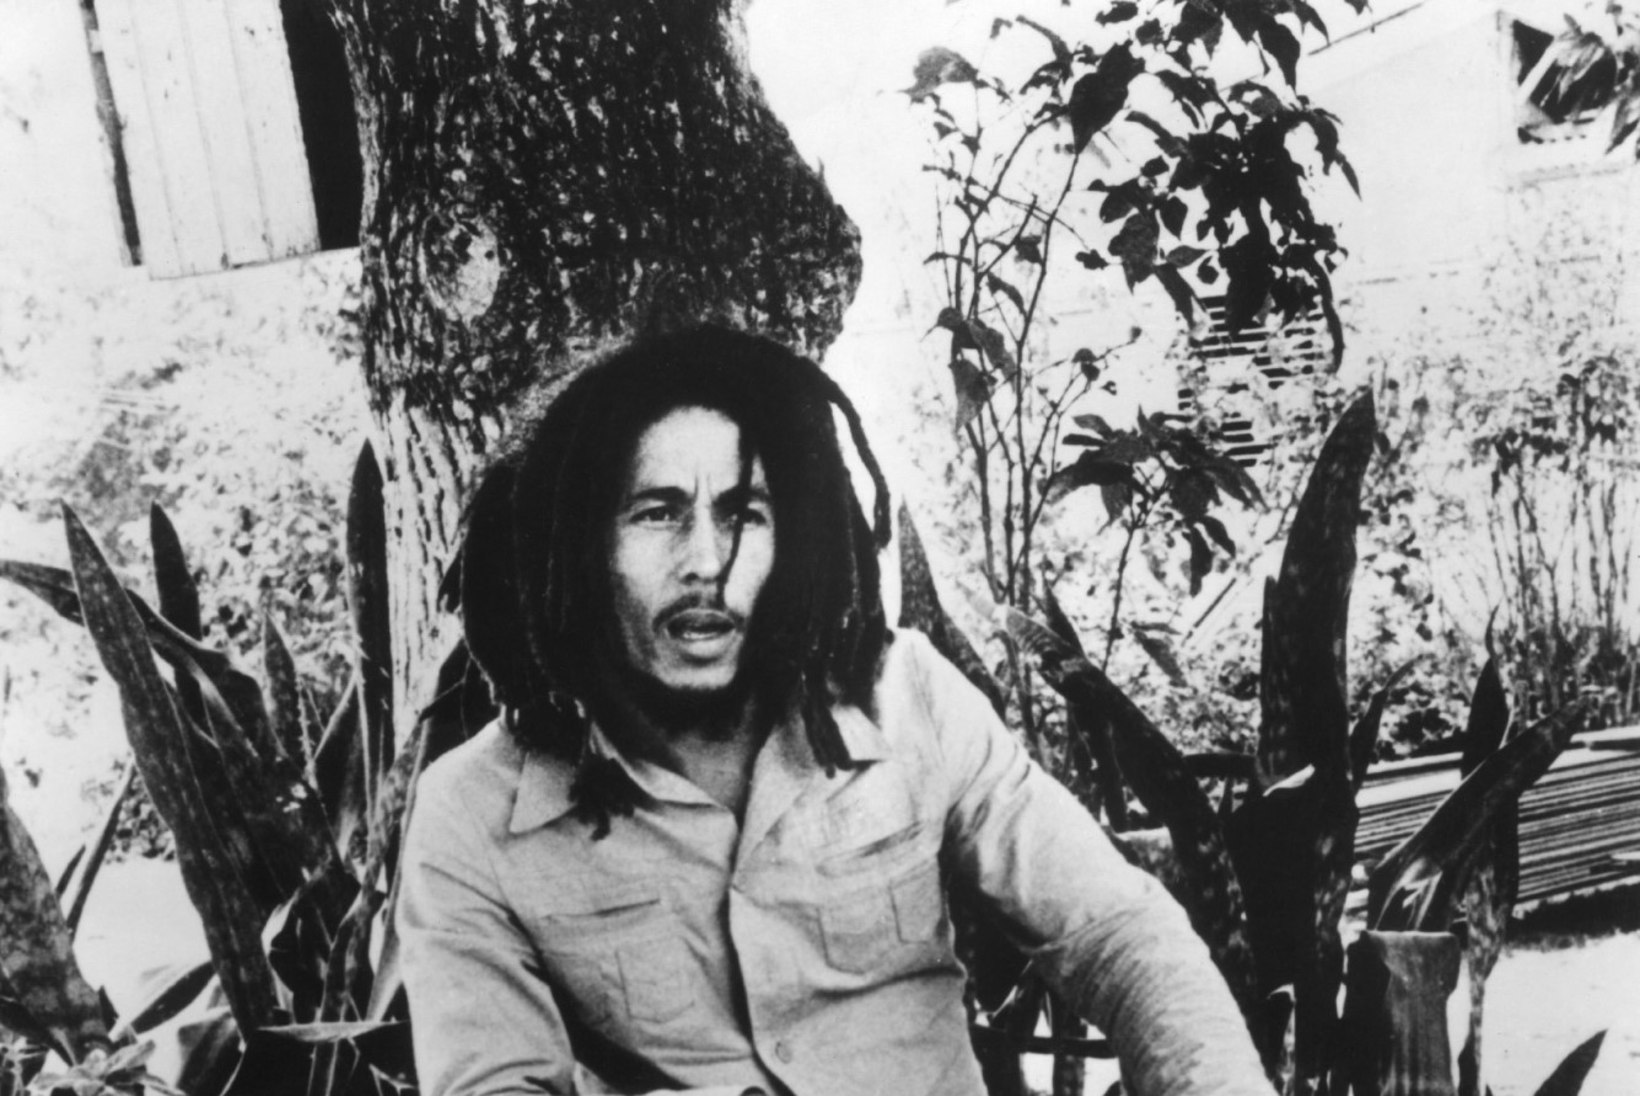 "Bob Marley kahetses vist terve elu, et ta mustanahaline ei olnud."